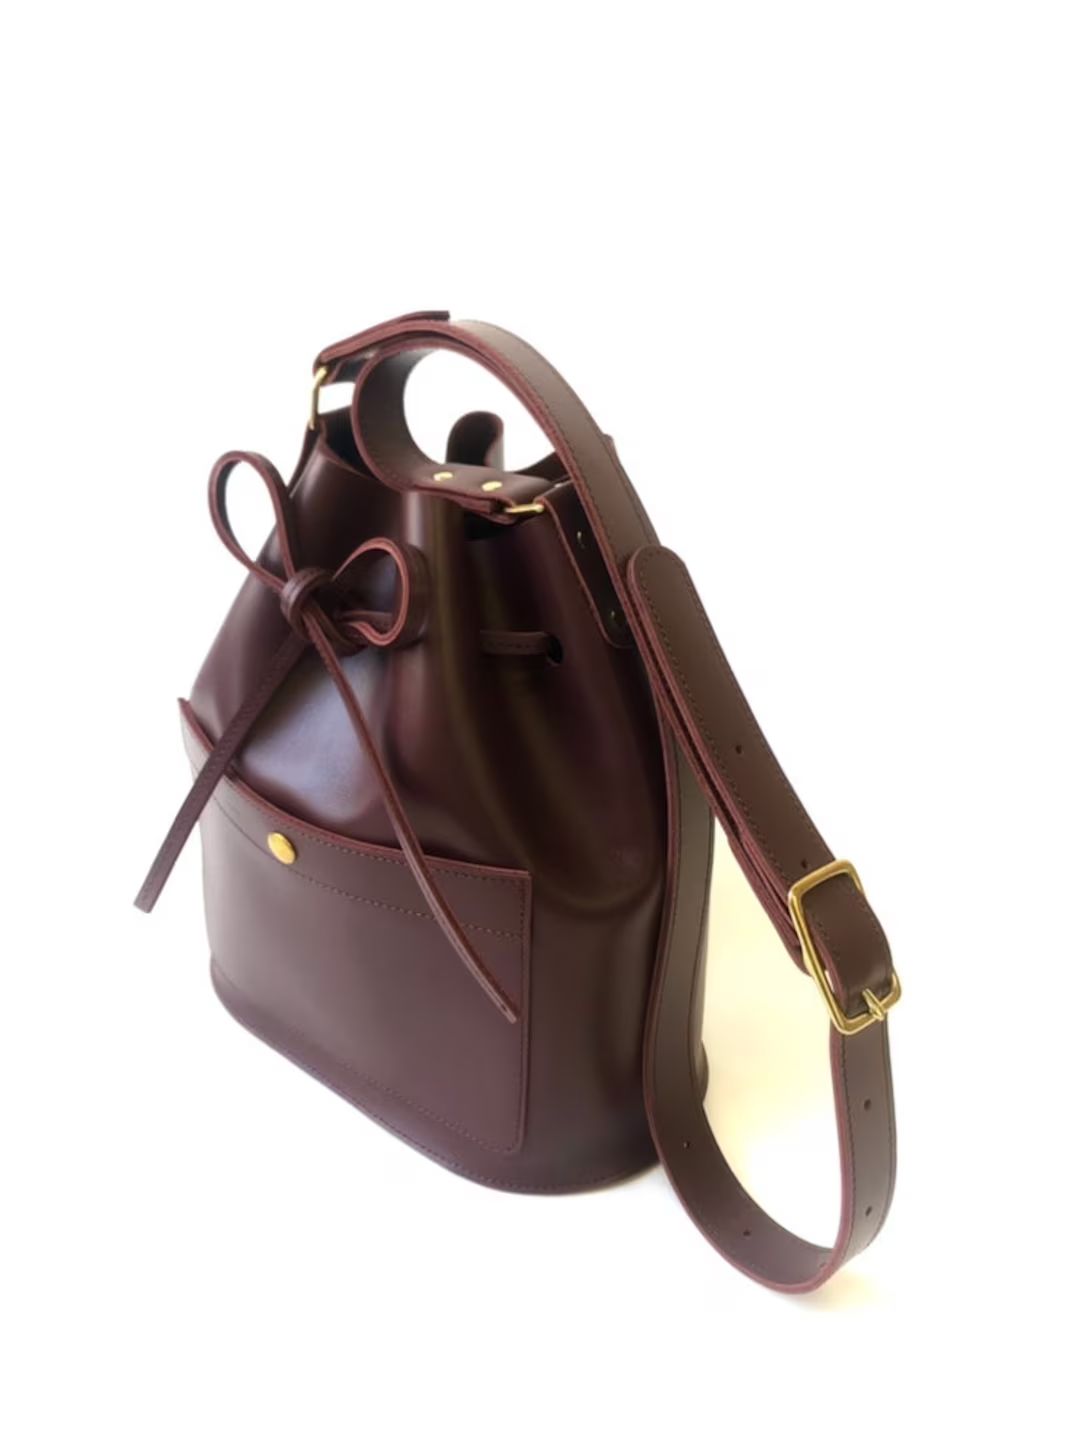 Handmade Leather Bucket Bag Burgundy - Etsy UK | Etsy (UK)